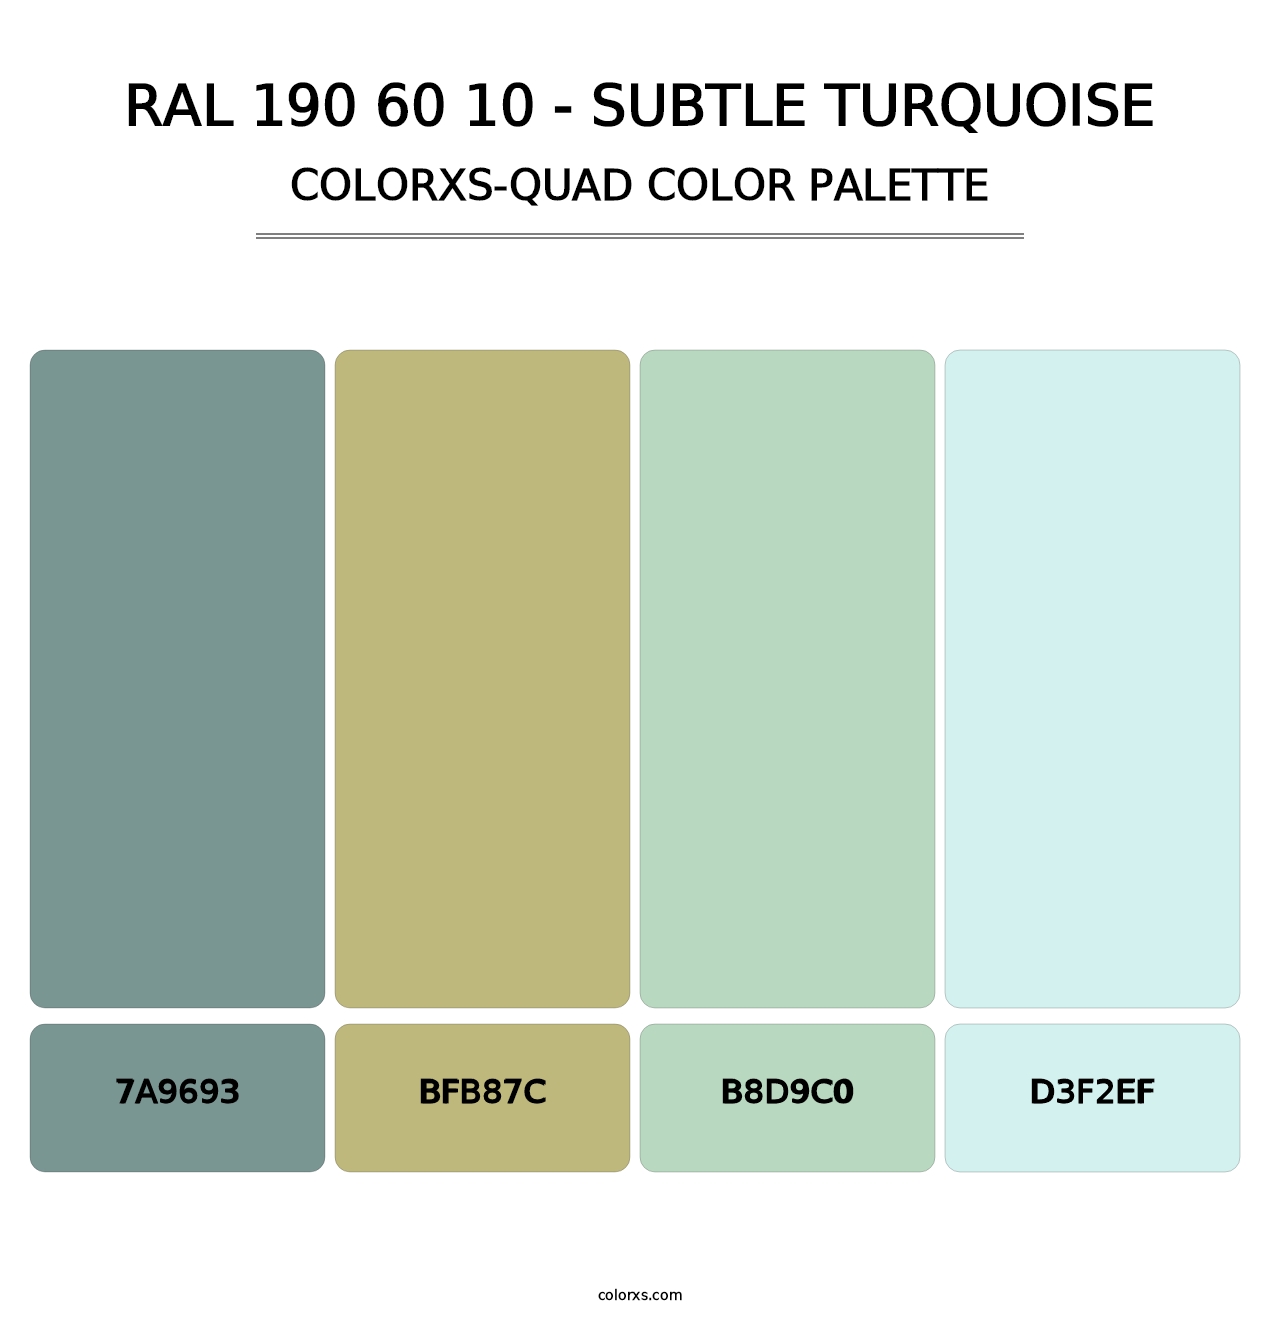 RAL 190 60 10 - Subtle Turquoise - Colorxs Quad Palette